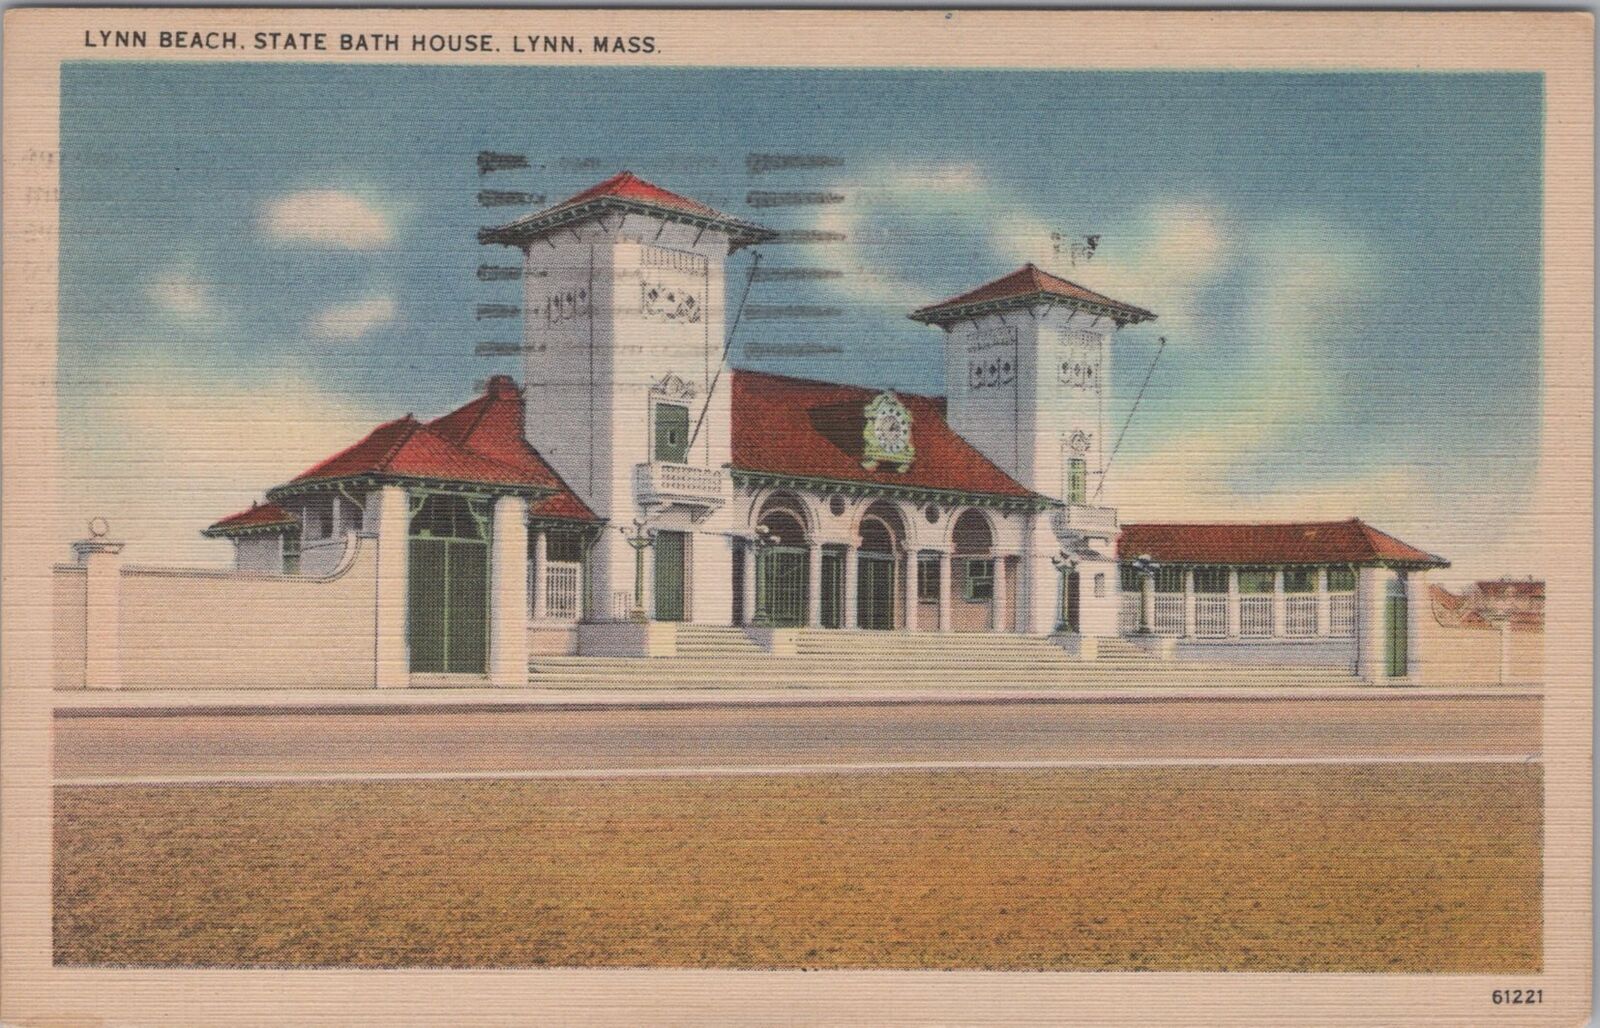 Lynn Beach State Bath House, Lynn Massachusetts 1945 Postcard